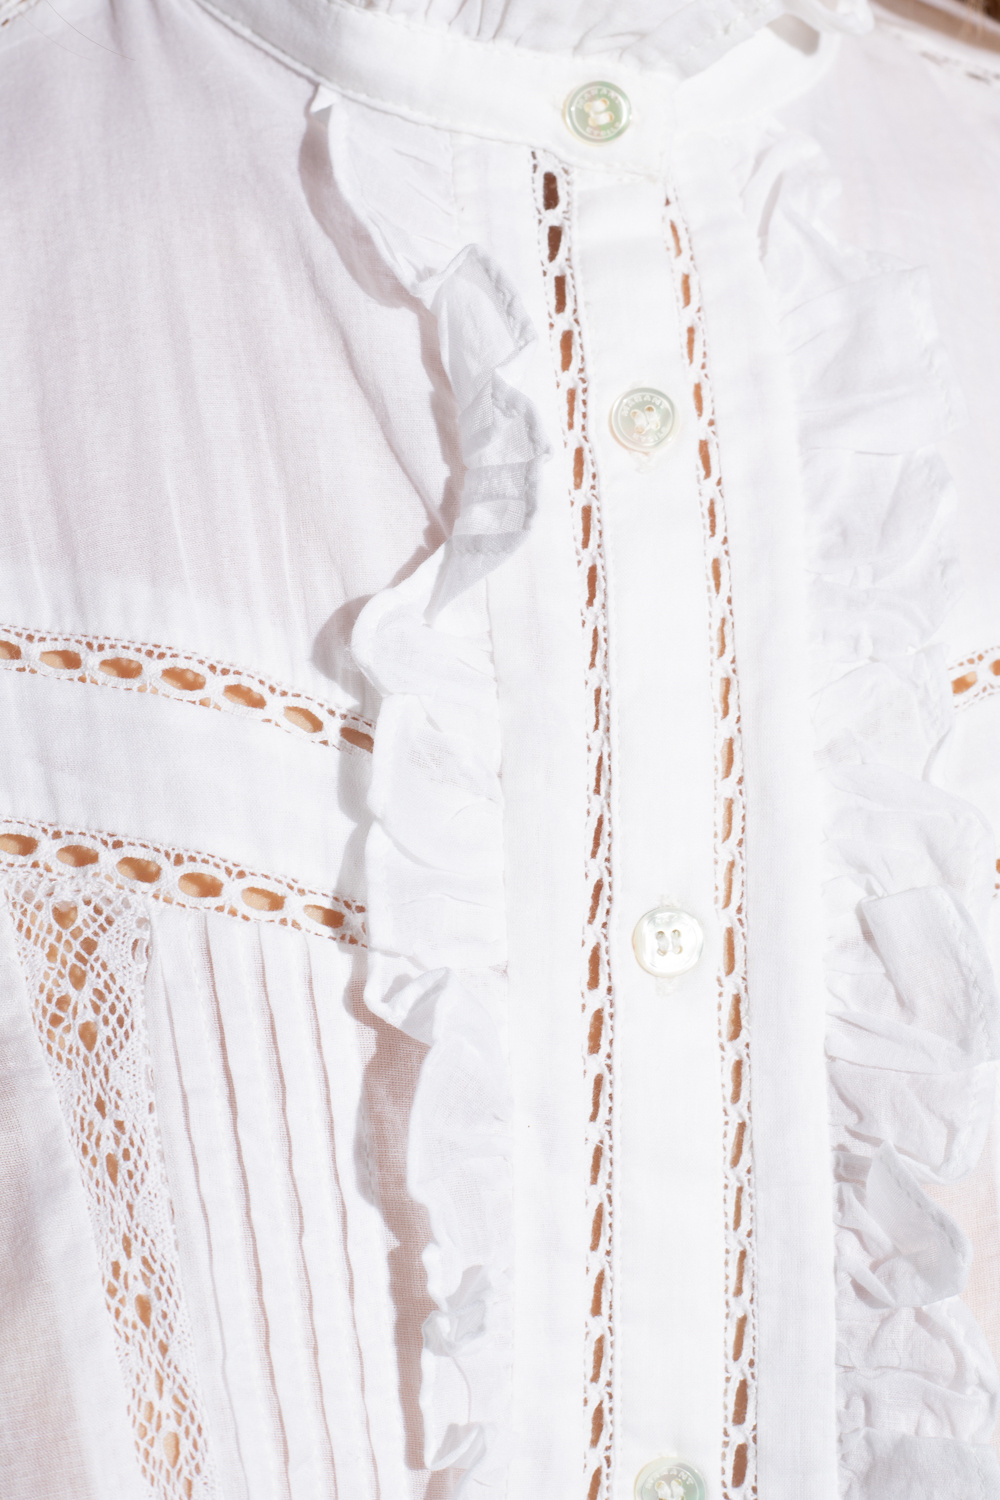 Marant Etoile ‘Metina’ shirt with openwork pattern